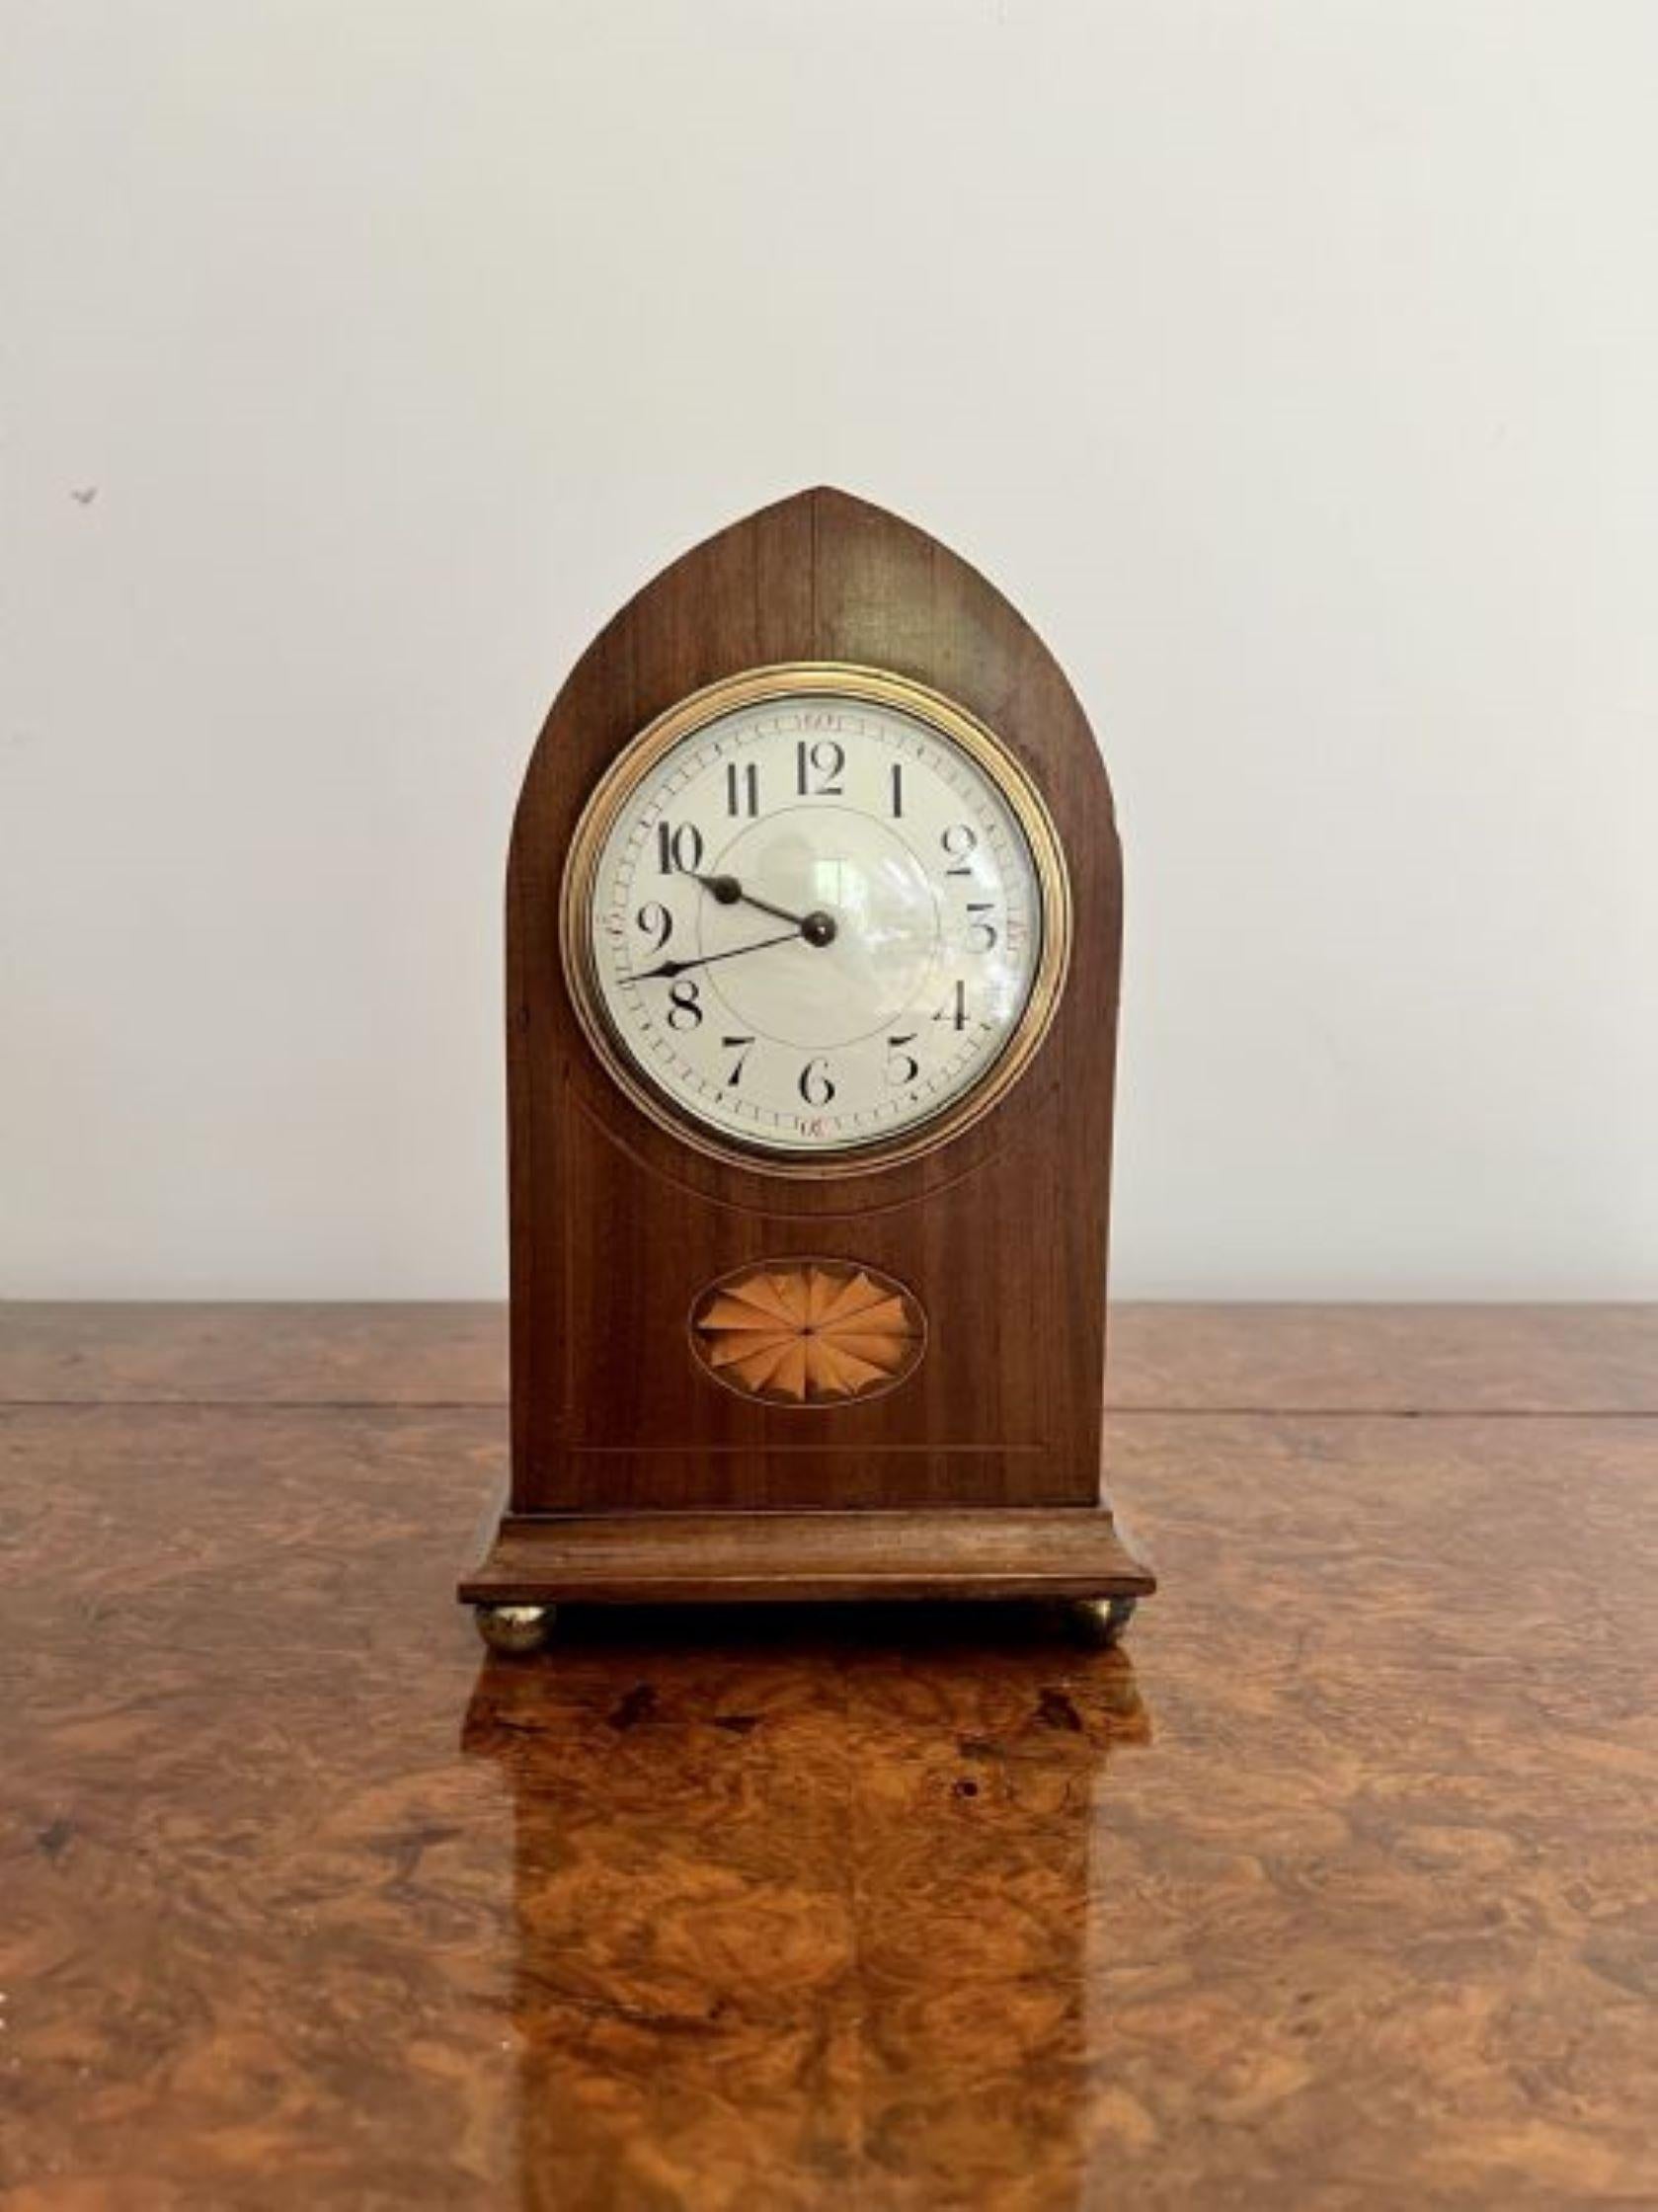 Schöne antike edwardianische Qualität Mahagoni eingelegten Satinholz Mantel Uhr mit einer schönen antiken edwardianischen Qualität Mahagoni Mantel Uhr mit eingelegten Satinholz Detail auf das Gehäuse, an der Spitze des Gehäuses geformt, mit einem